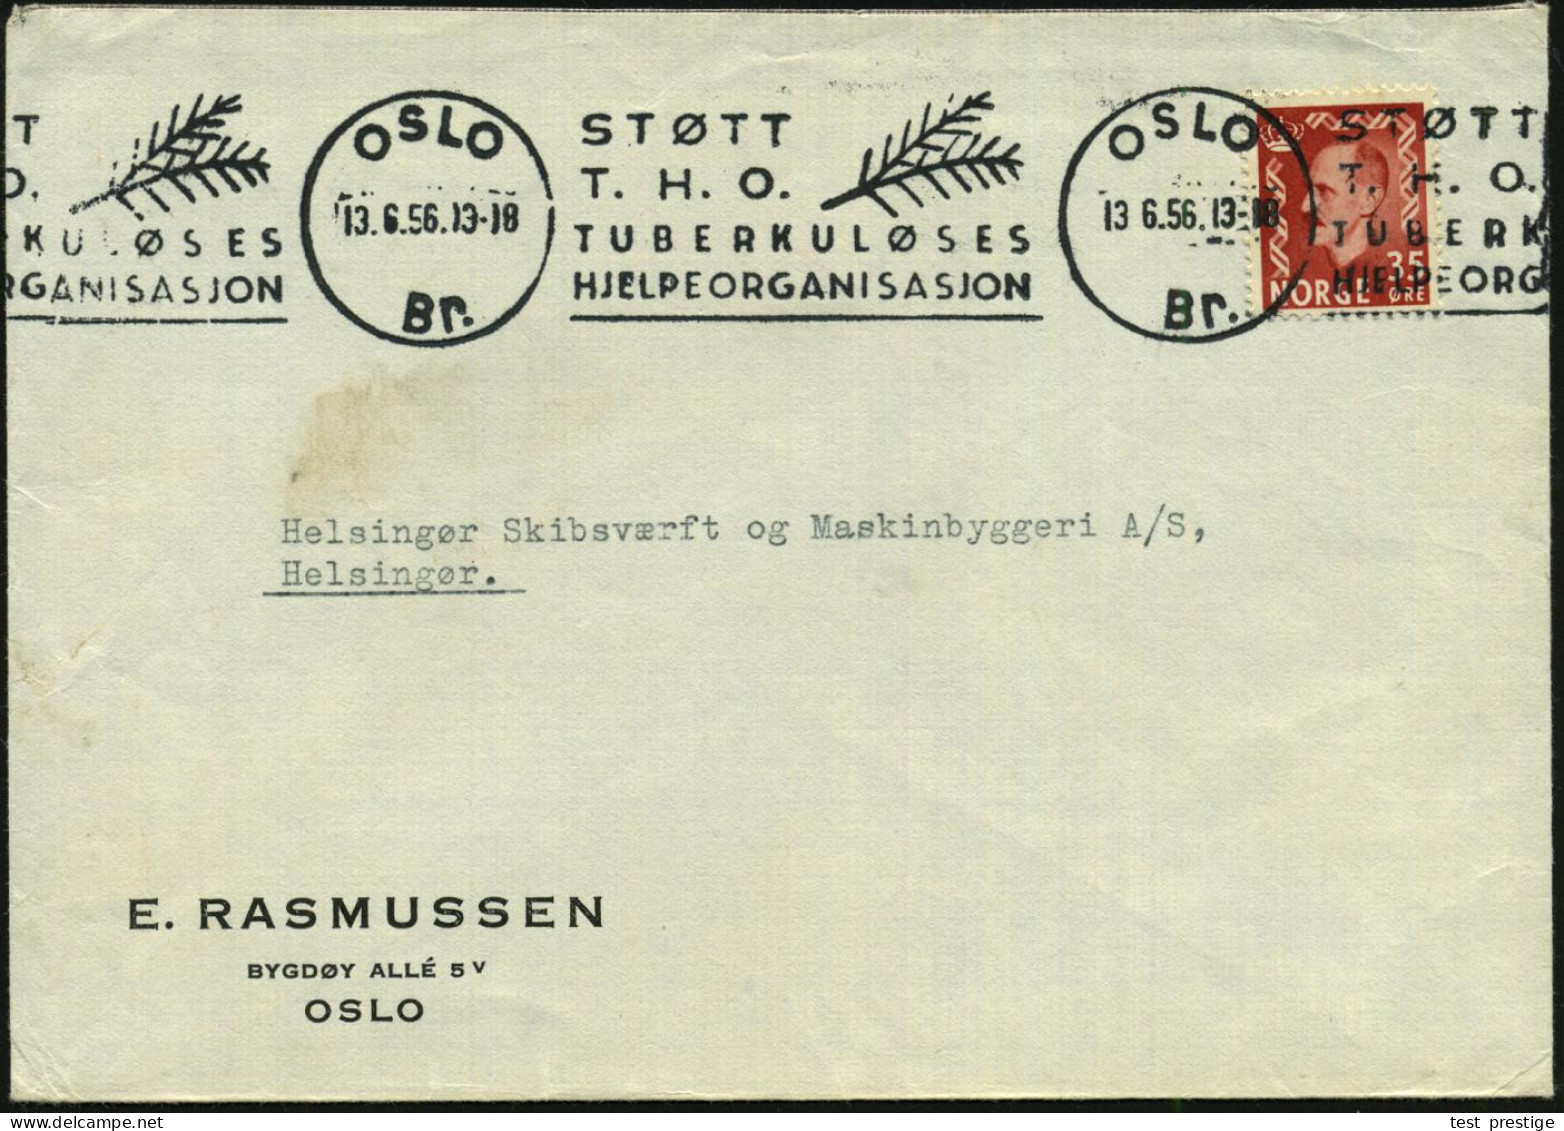 NORWEGEN 1956 (Juni) Band-MWSt: OSLO/Br./STÖTT/T.H.O./TUBERKULÖSES/HJELPEORGANISASJON (Zweig) Klar Gest. Bedarfsbf. - TU - Enfermedades